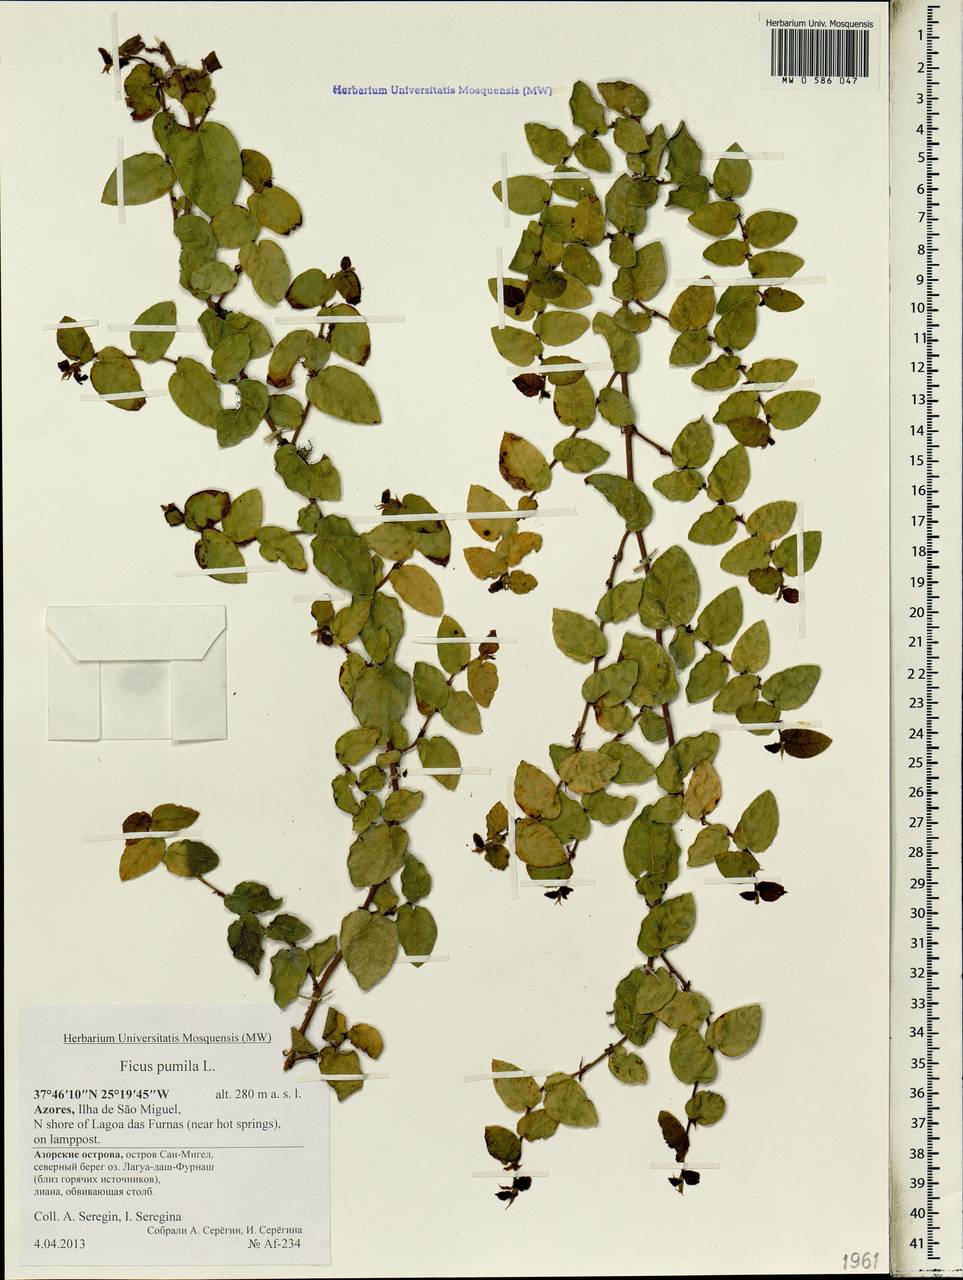 Ficus pumila L., Africa (AFR) (Portugal)